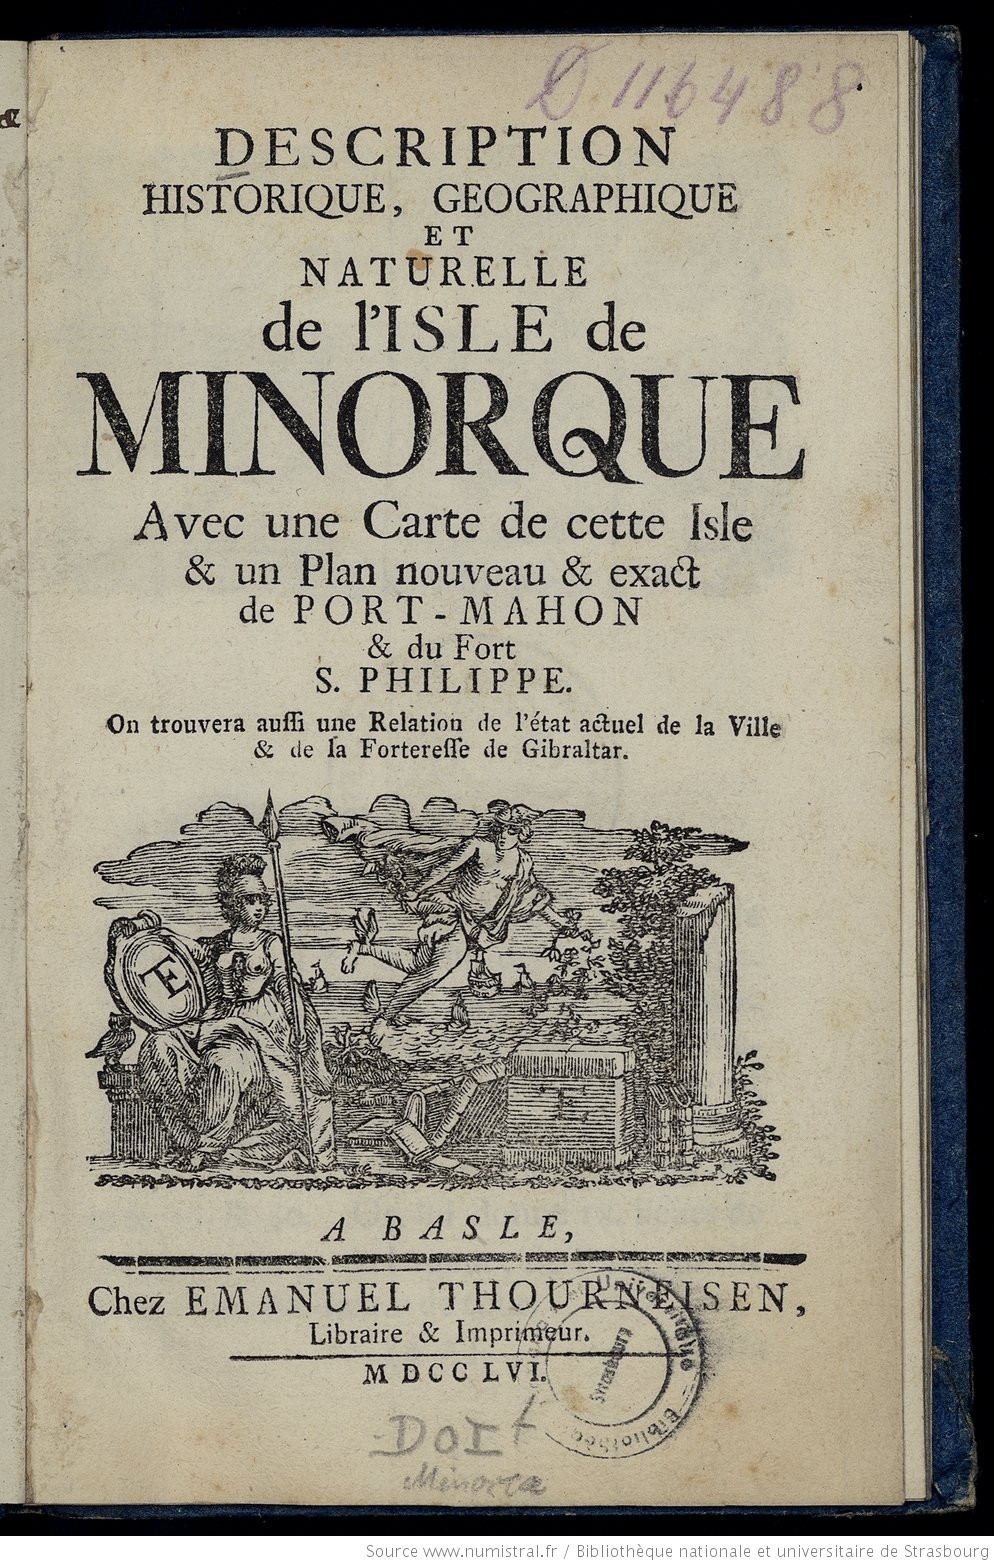 Description historique, géographique et naturelle de l'Isle de Minorque